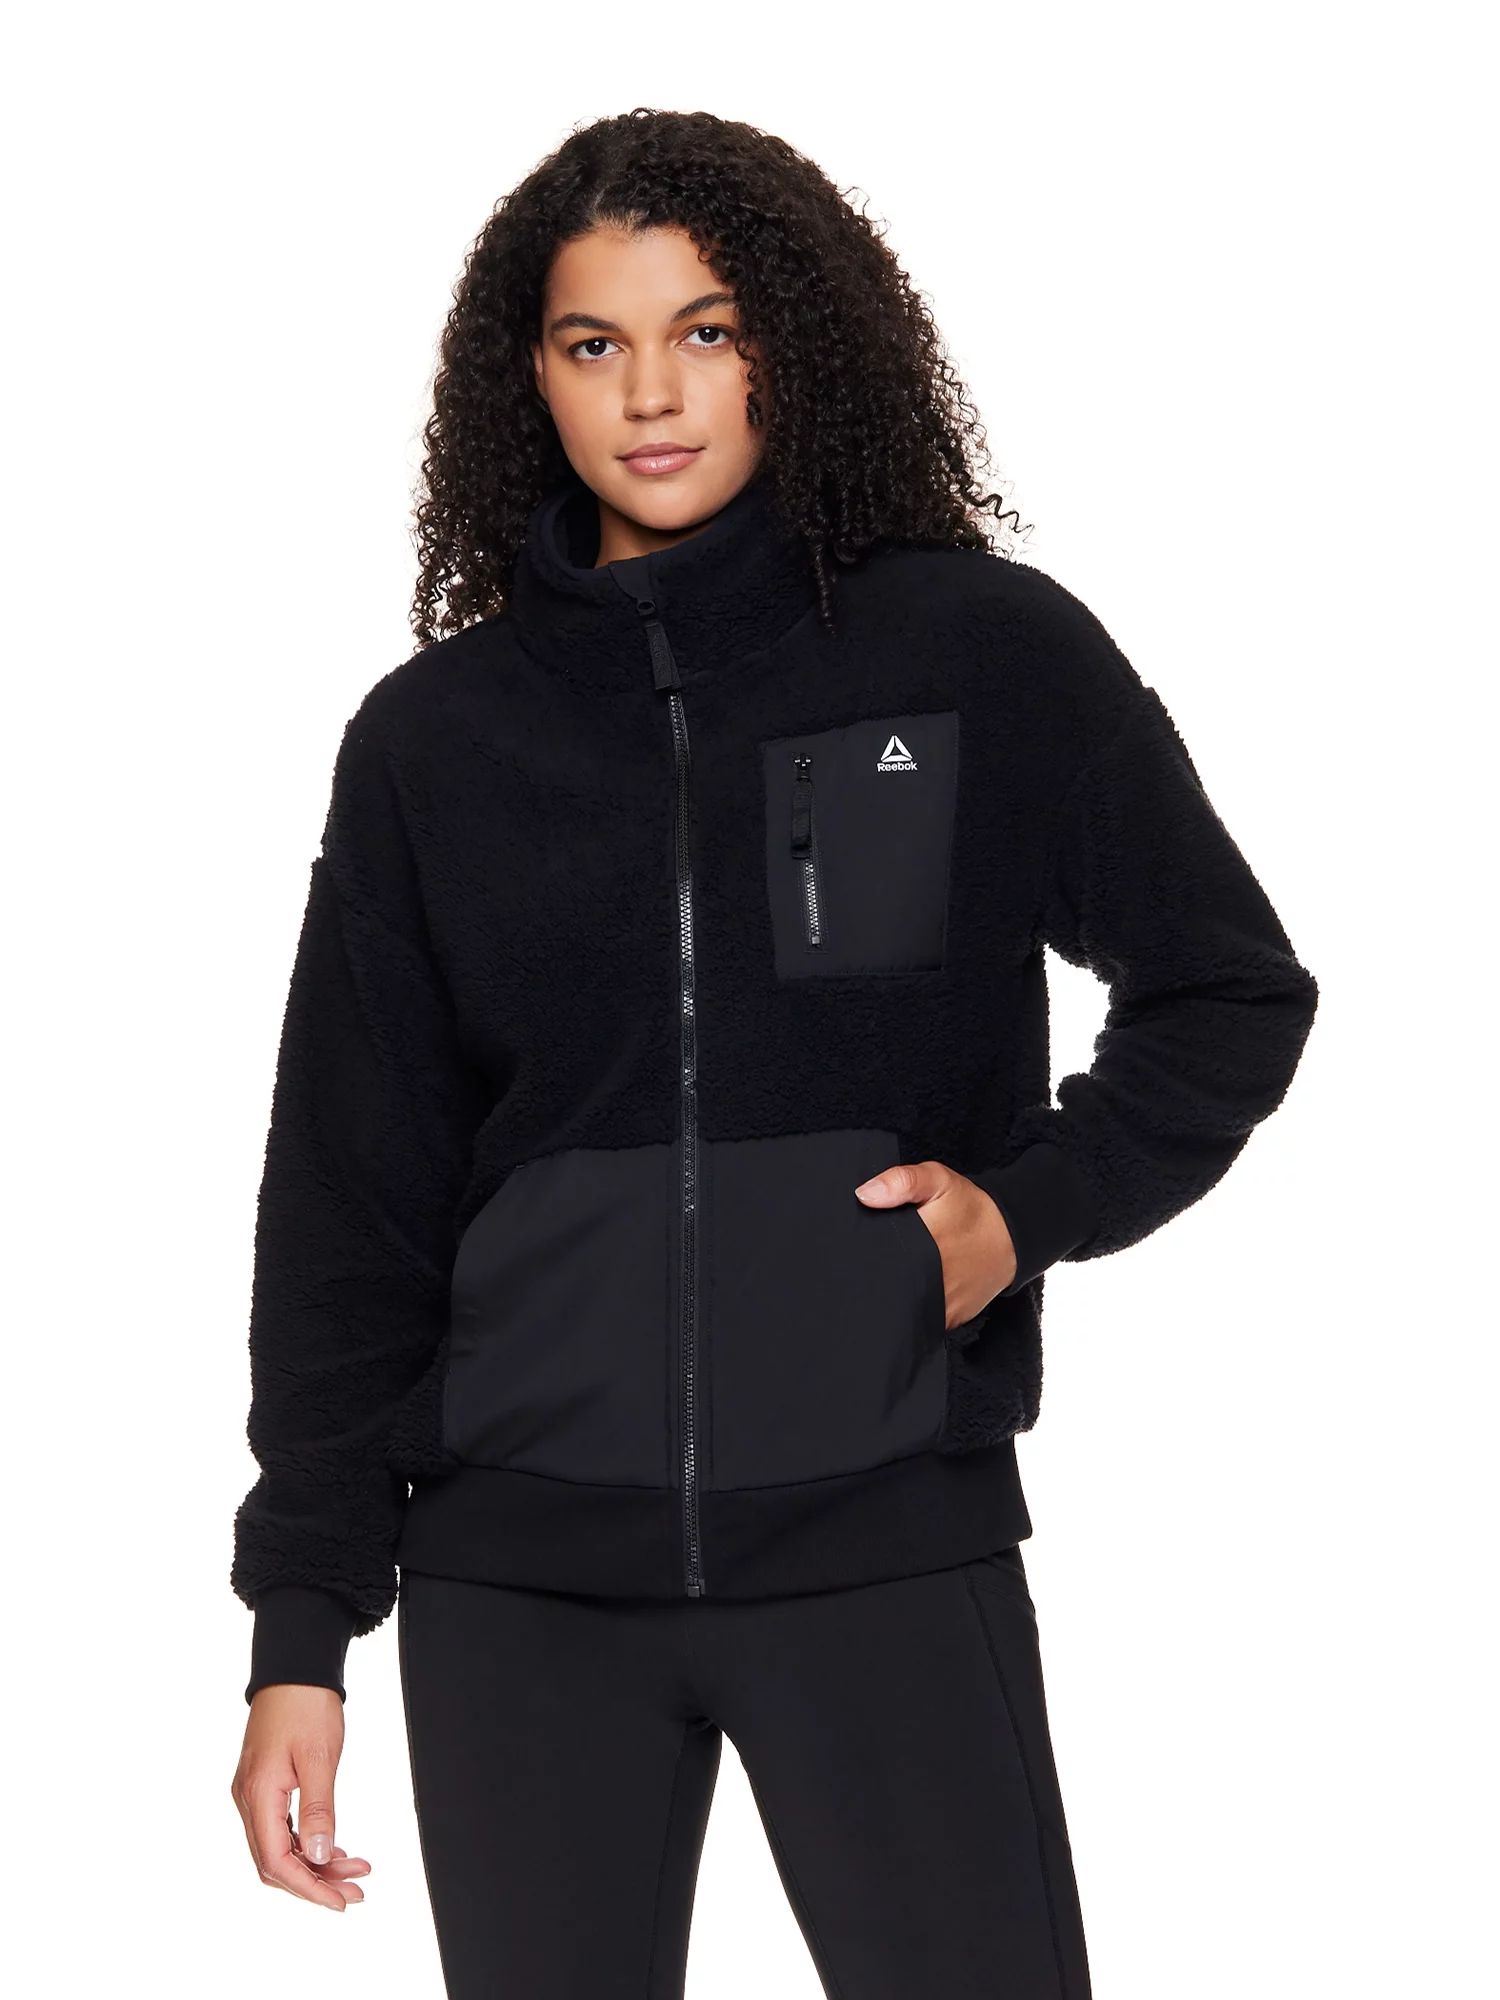 Reebok Women's Getaway Sherpa Jacket With Front Zipper Pocket | Walmart (US)